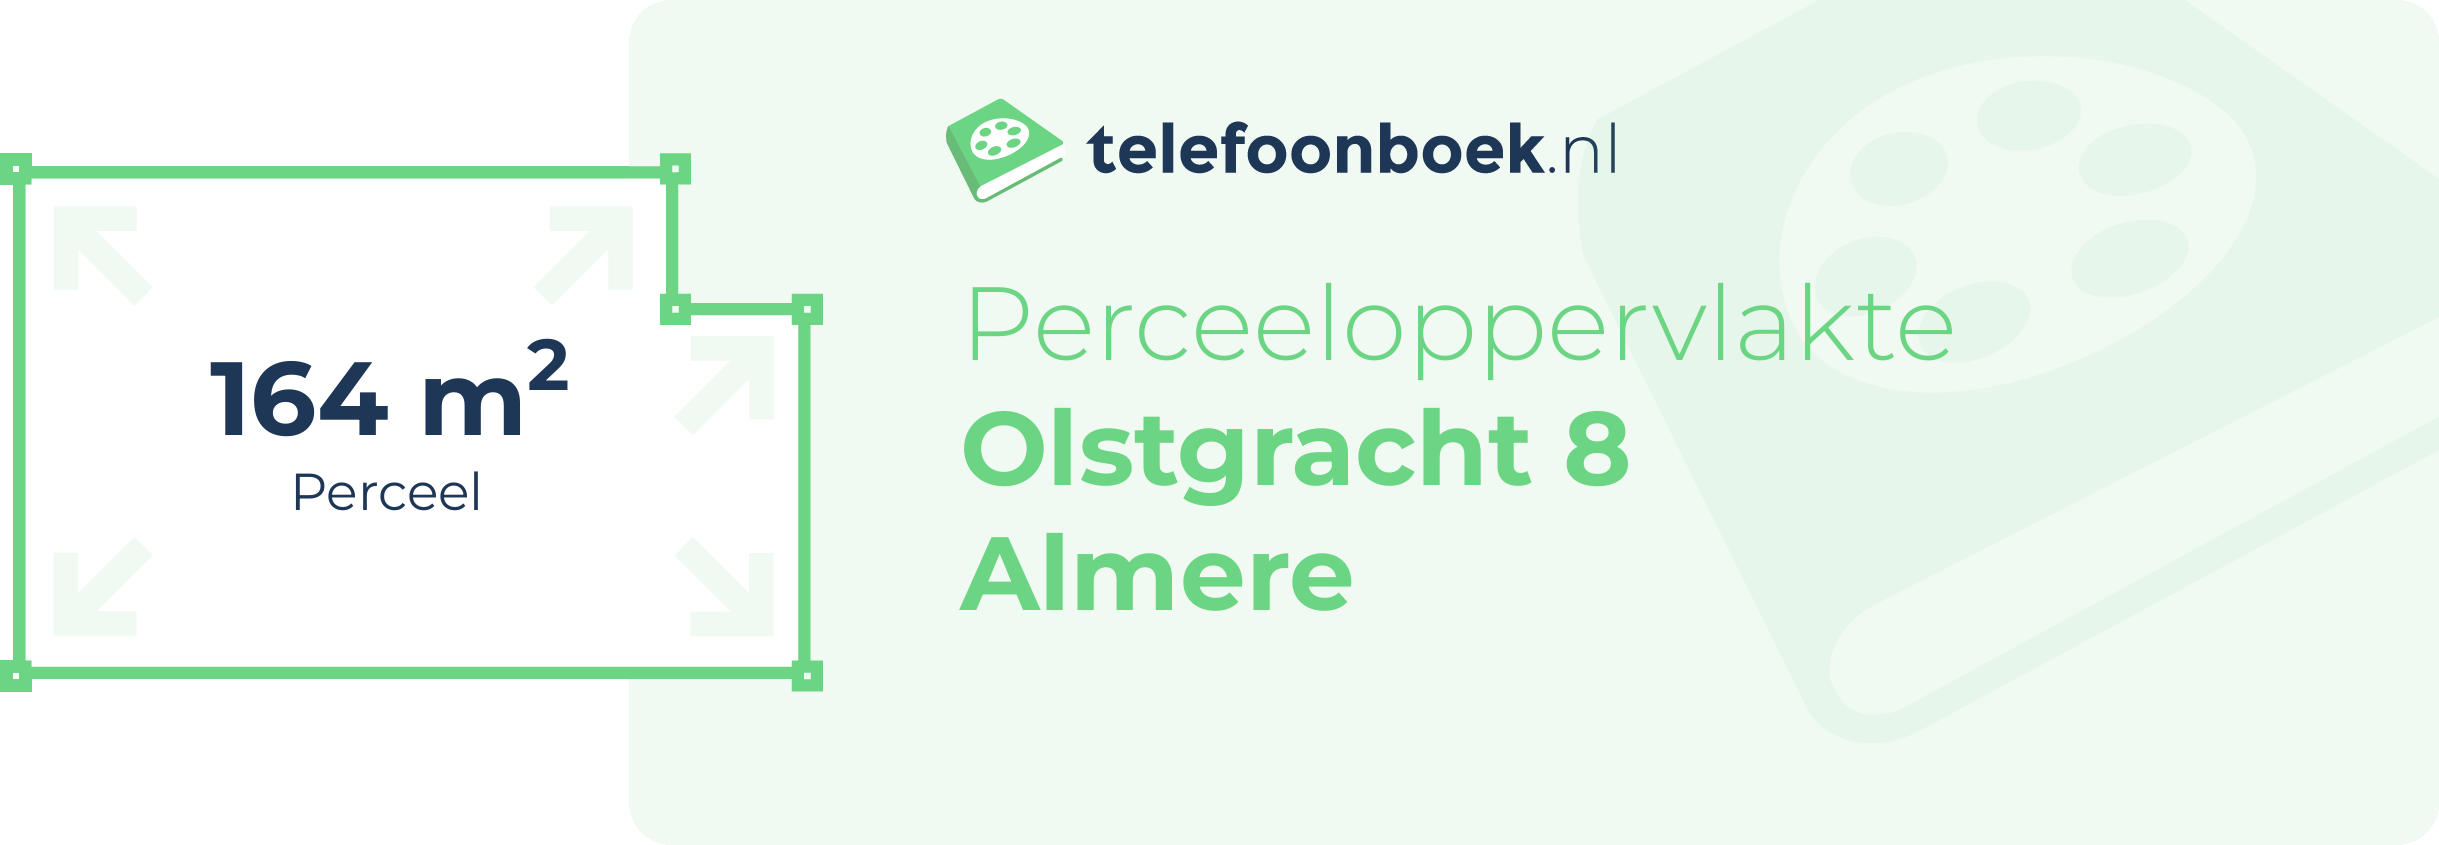 Perceeloppervlakte Olstgracht 8 Almere